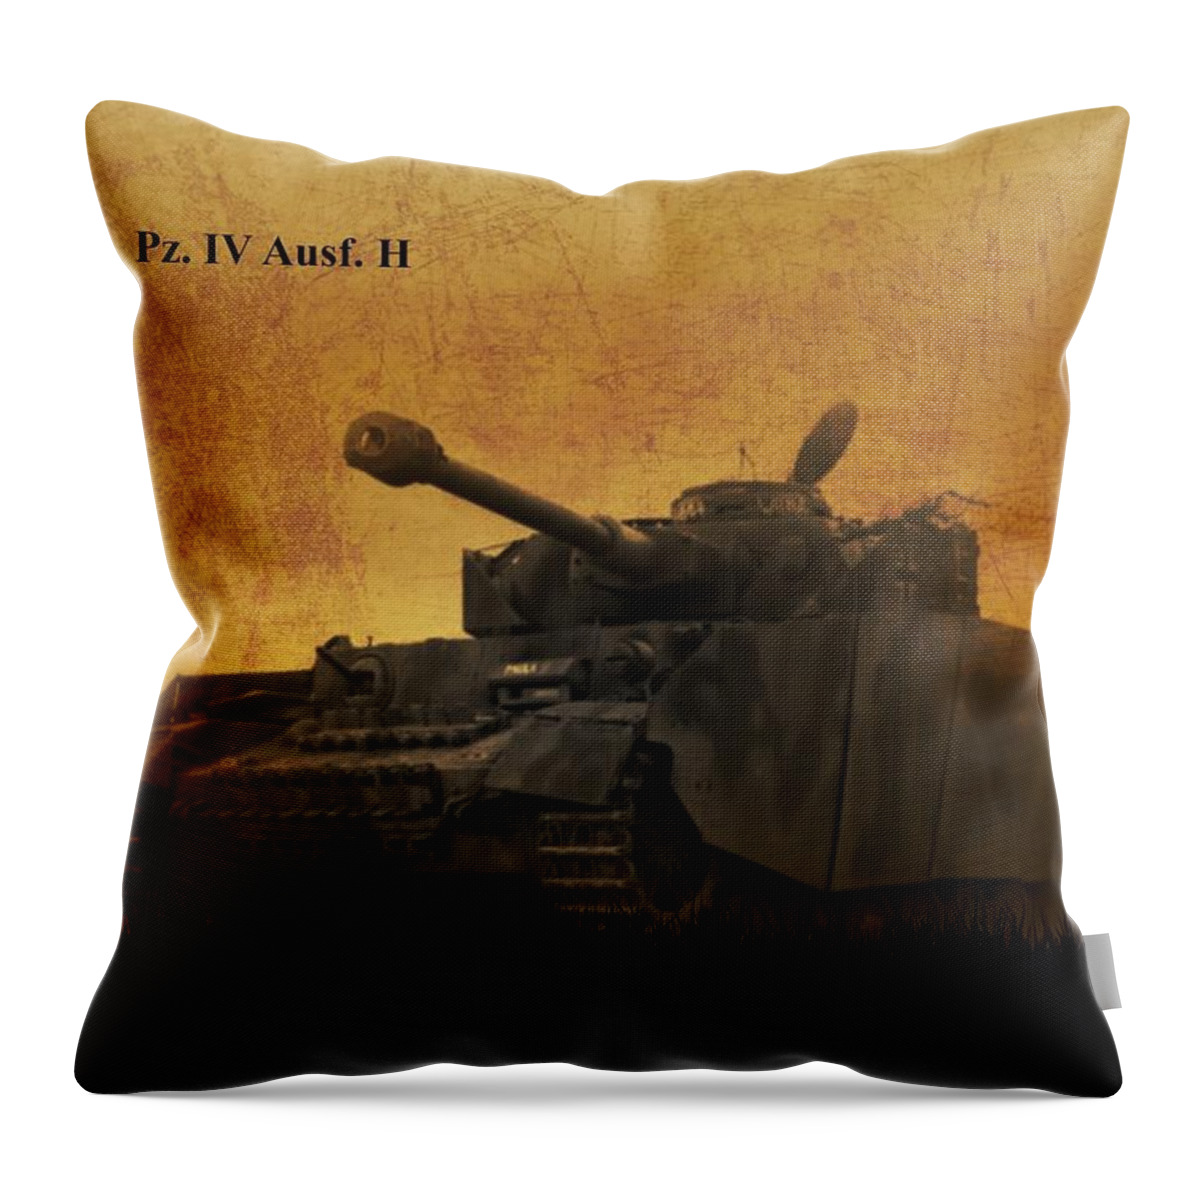 Panzer Throw Pillow featuring the digital art Panzer 4 Ausf H by John Wills